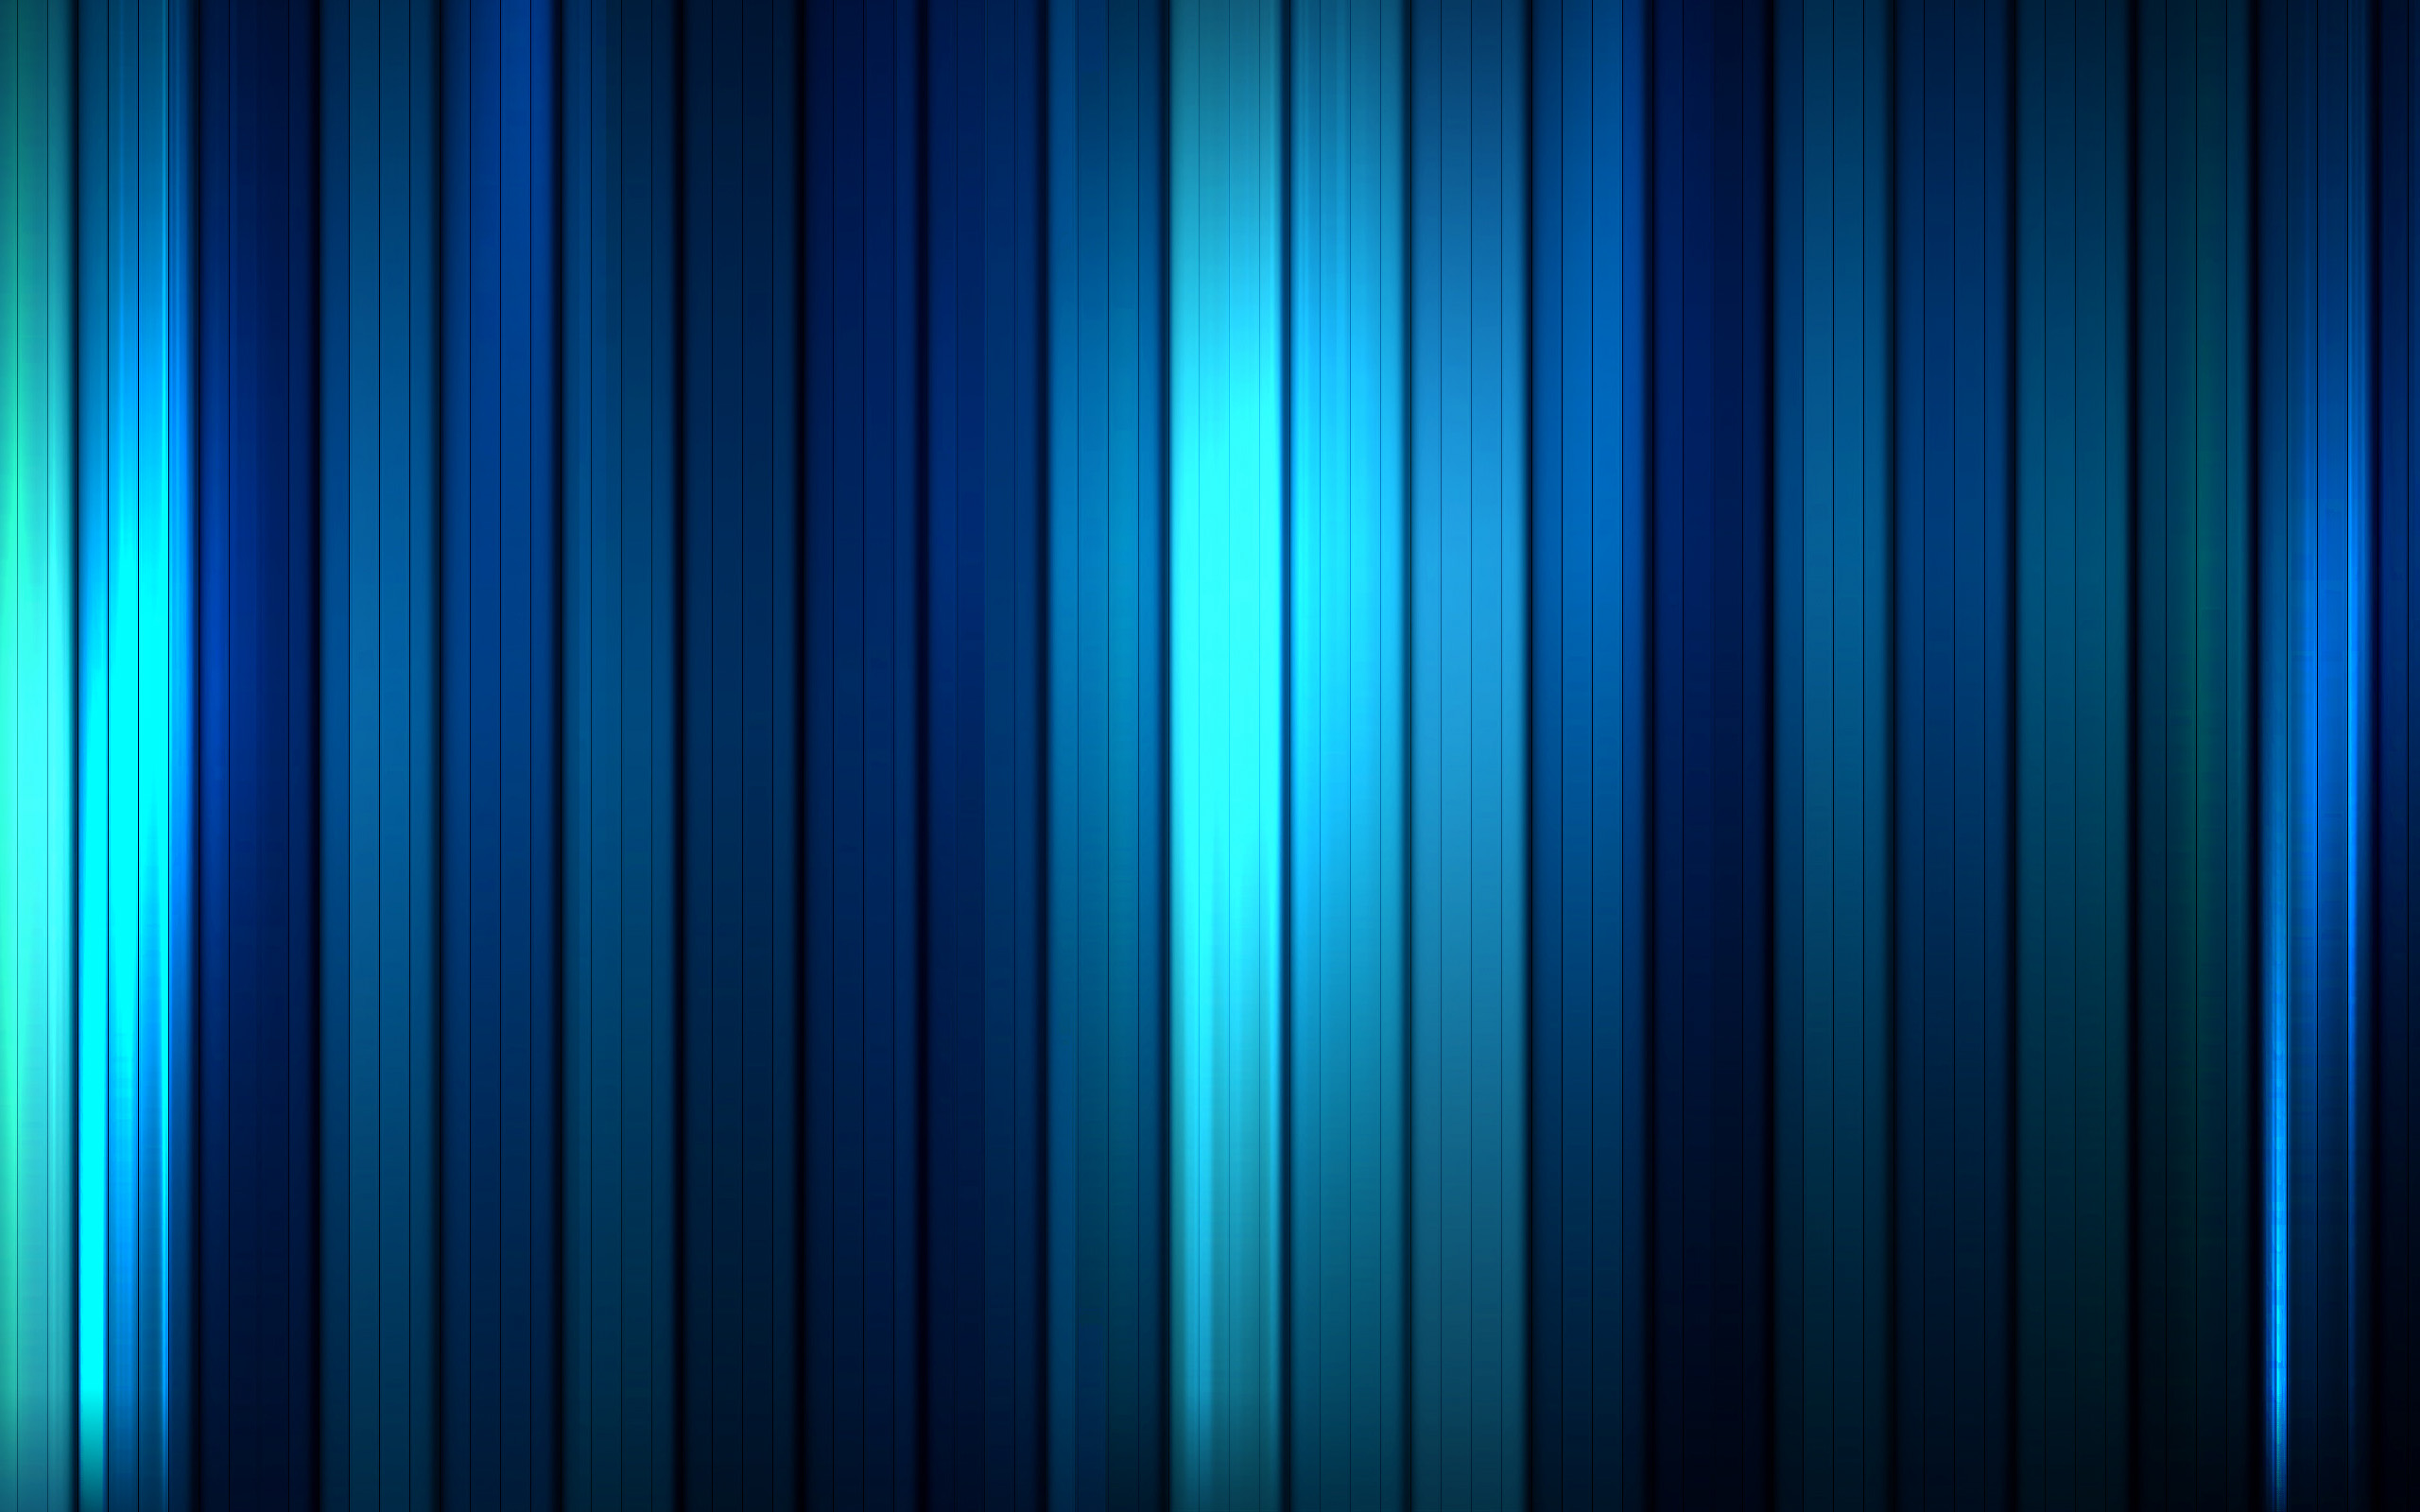 壁纸2560x1600蓝色静谧主题系列壁纸壁纸 蓝色静谧主题系列壁纸壁纸 蓝色静谧主题系列壁纸图片 蓝色静谧主题系列壁纸素材 创意壁纸 创意图库 创意图片素材桌面壁纸